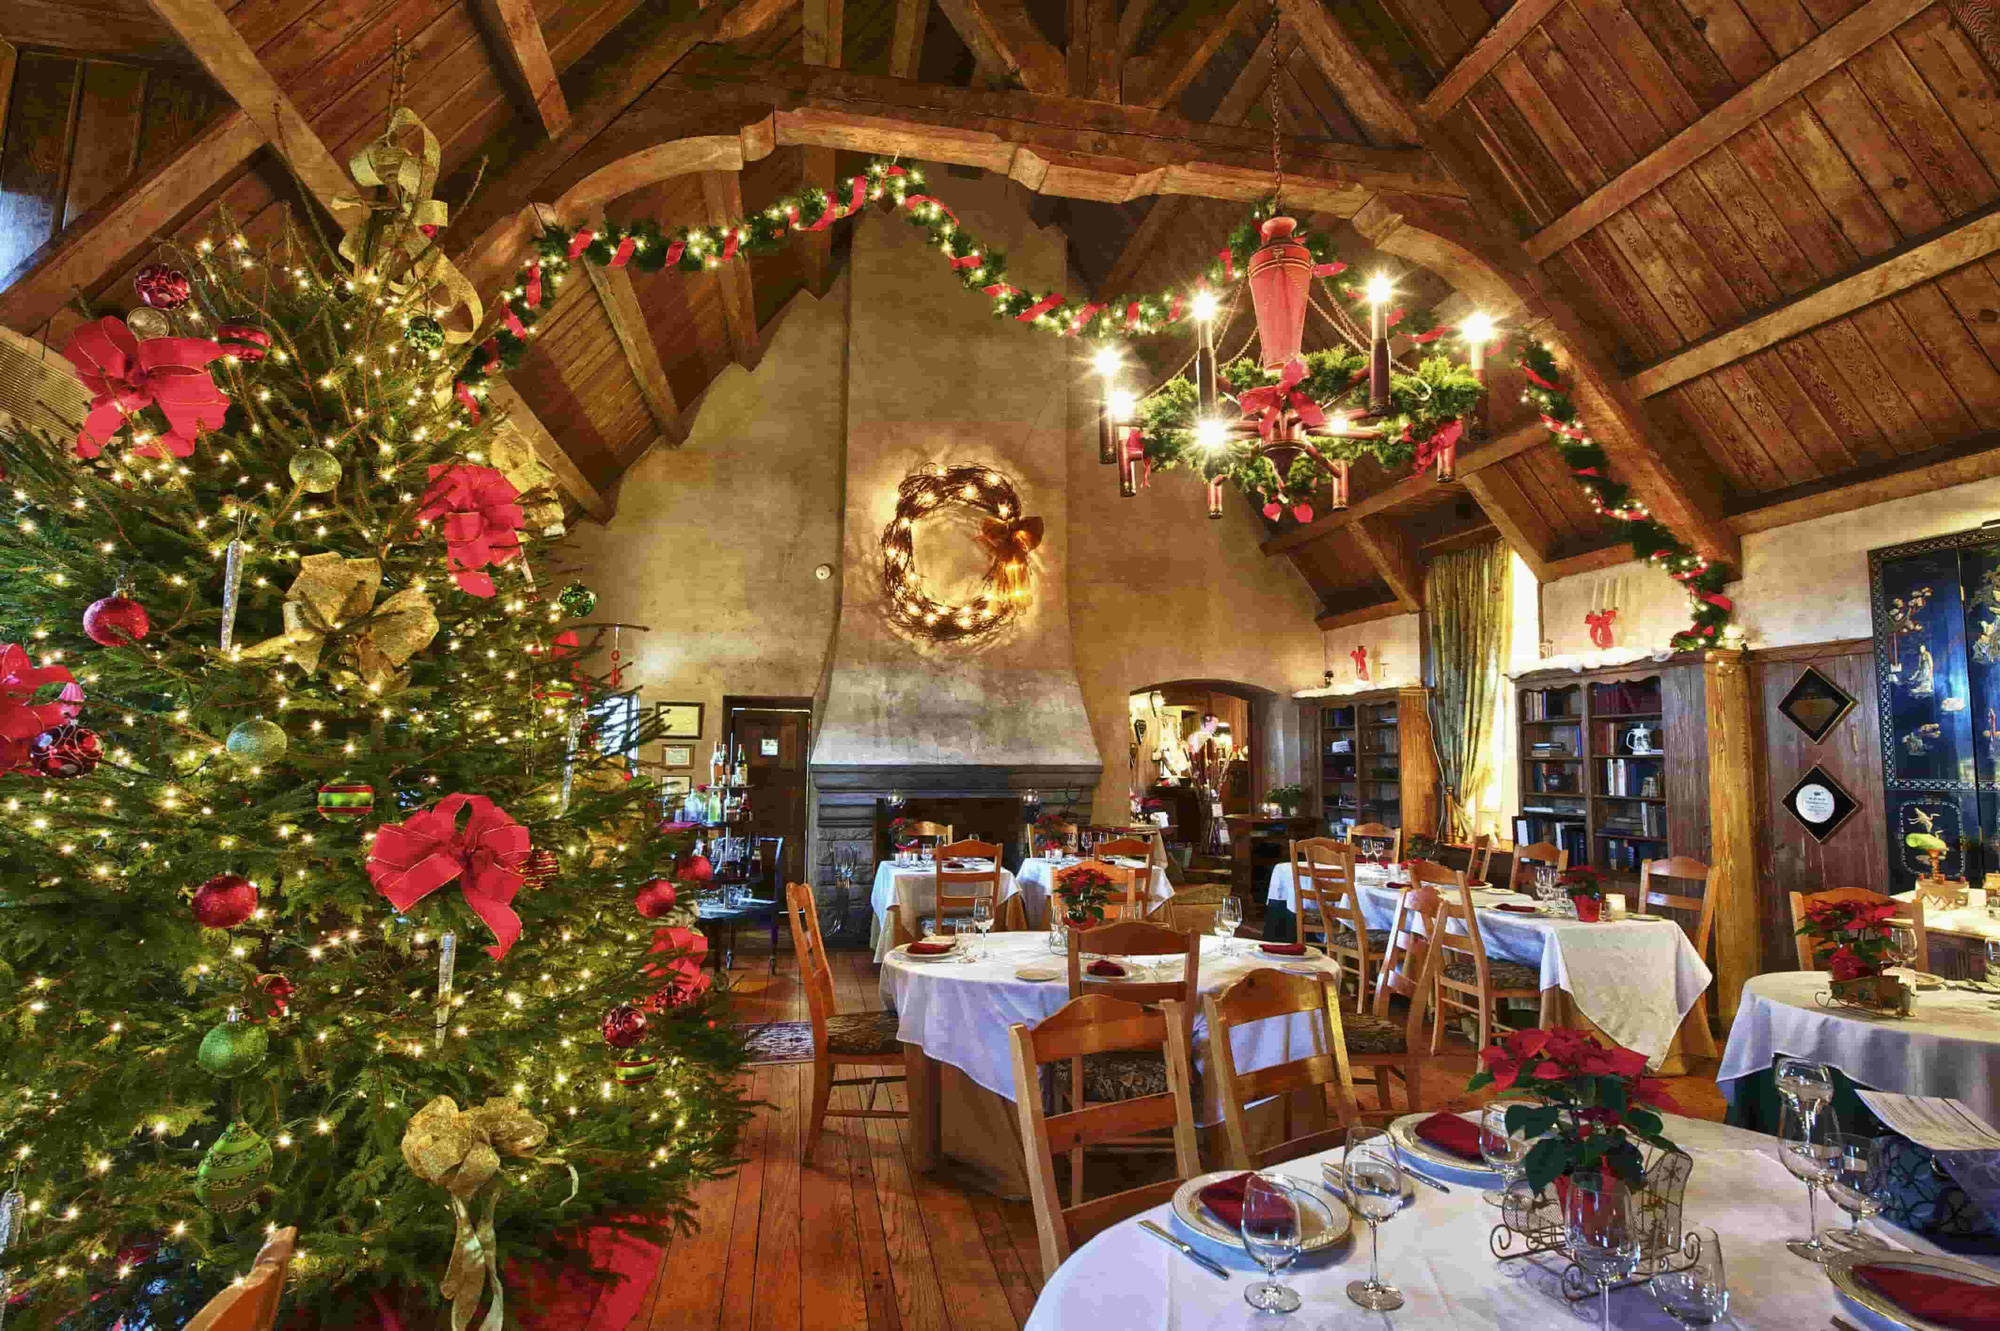 Ý tưởng trang trí Noel nhà hàng đẹp lung linh trong dịp cuối năm 2021 - Ảnh 20.